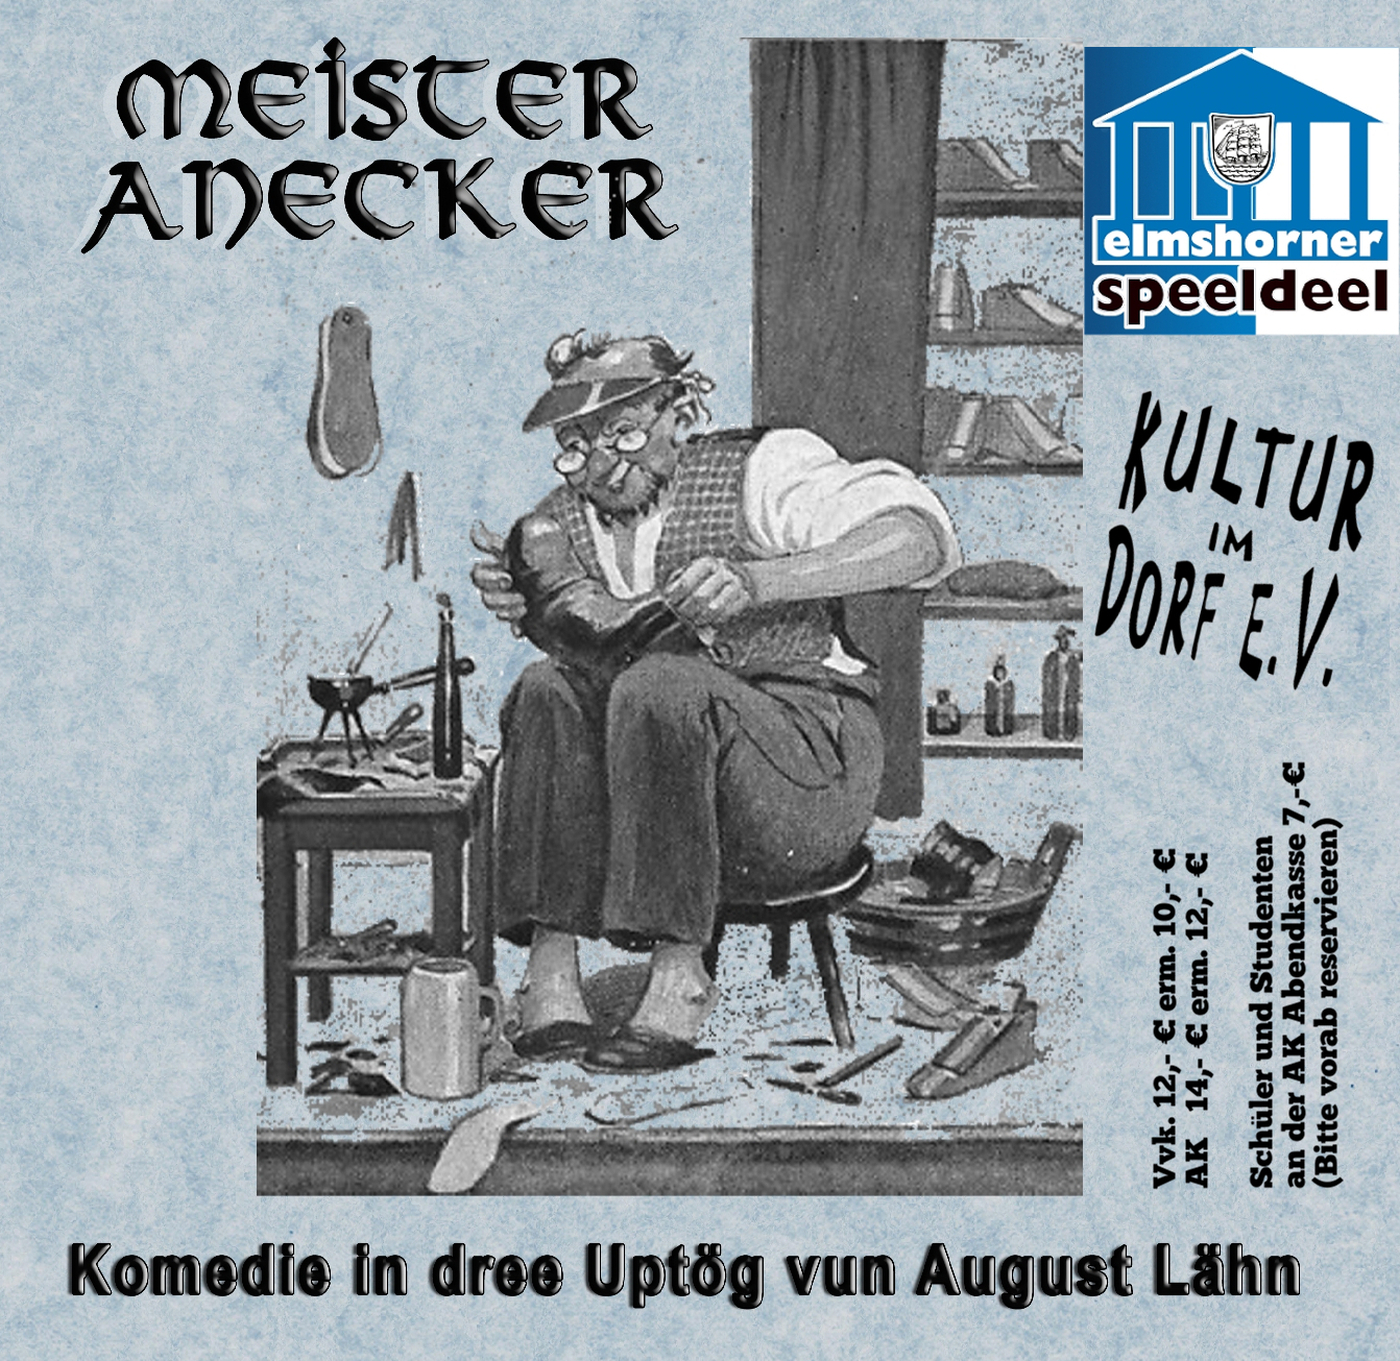 Elmshorner Speeldeel - Meister Anecker am 18. Nov. im Bürgerhaus in Alveslohe